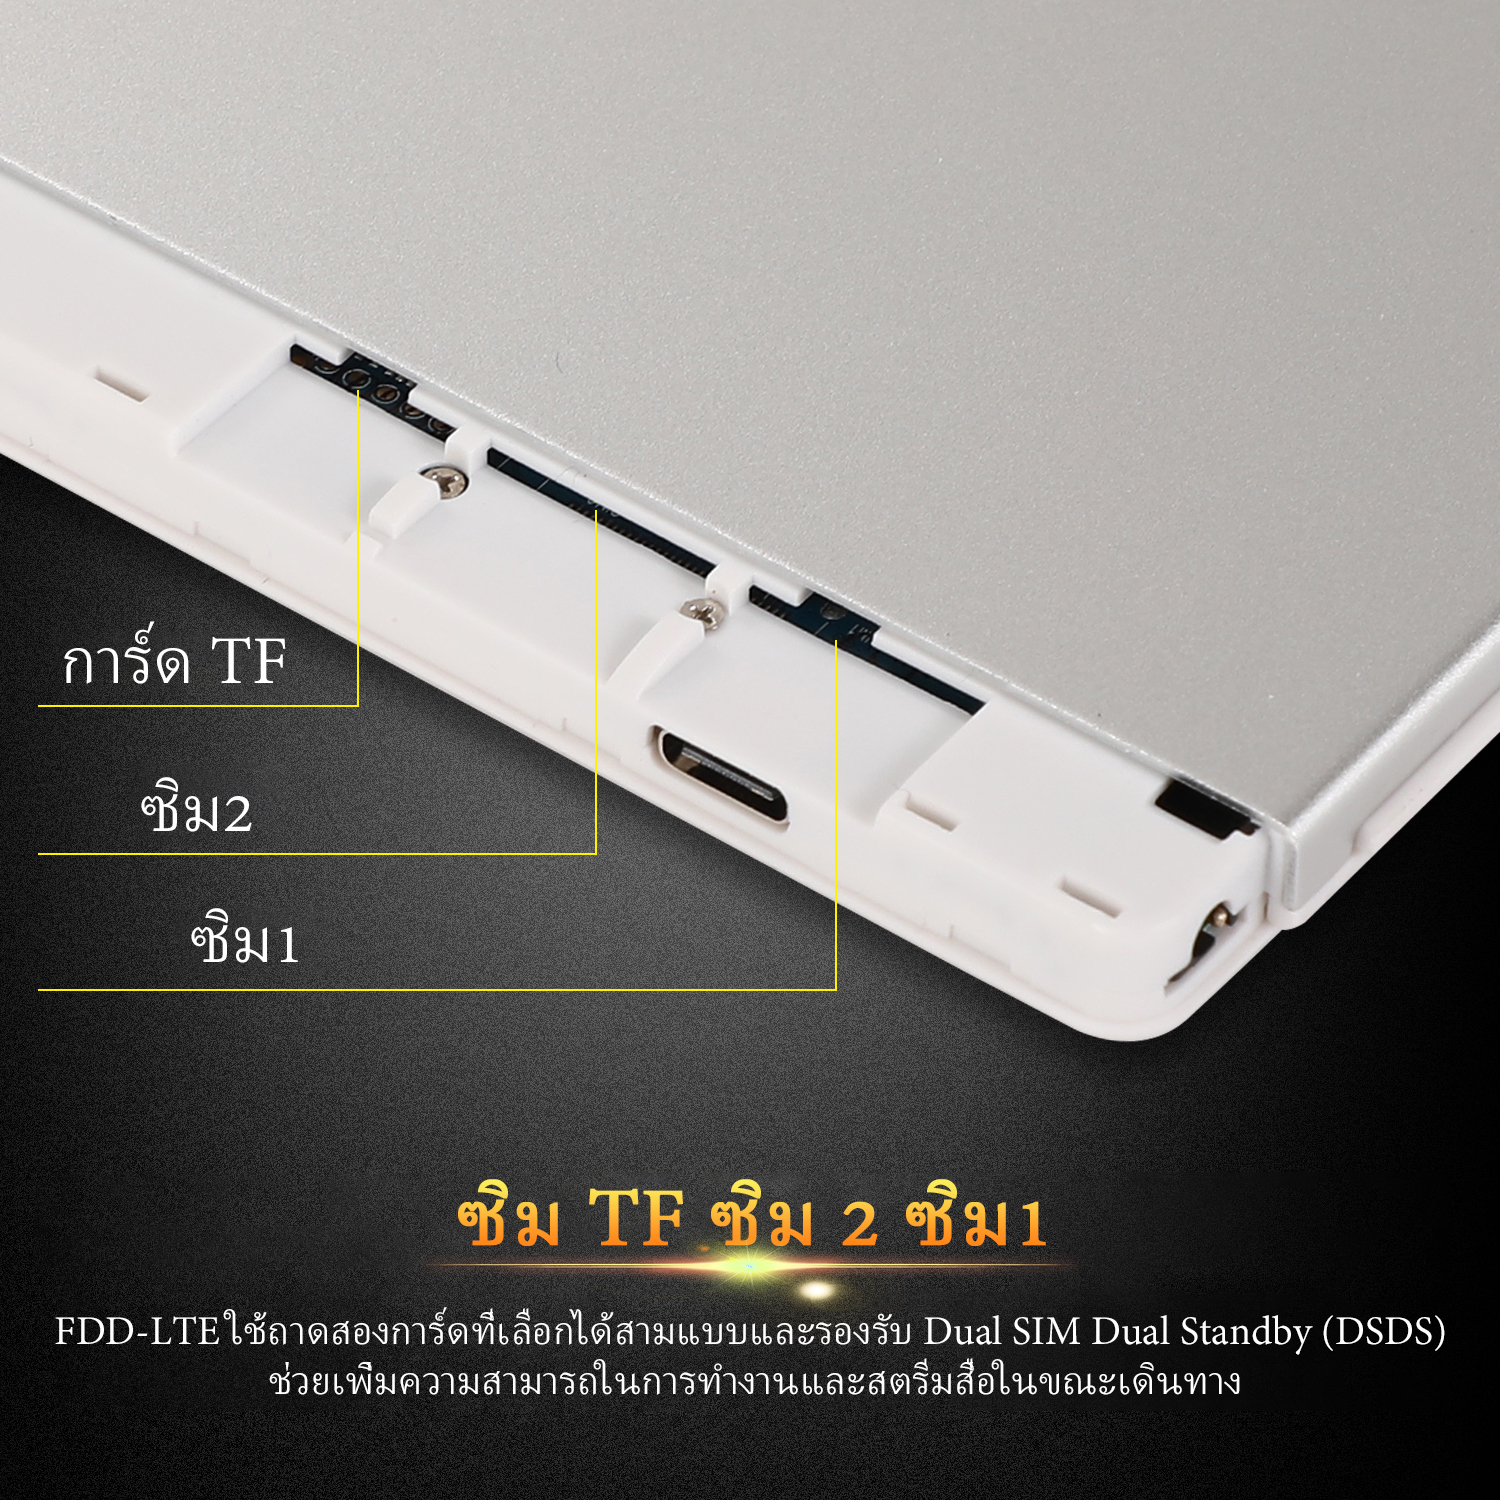 มุมมองเพิ่มเติมของสินค้า Tablet Xiaomi Pad 5 แท็บเล็ต 10.1นิ้ว RAM12G ROM512G โทรได้ แท็บเล็ตถูกๆ แท็บเล็ตราคาถูก Andorid 10.0 Tablet จัดส่งฟรี รองรับภาษาไทย หน่วยประมวลผล 10-core แท็บเล็ตโทรได้ แท็บเล็ตสำหรับเล่นเกมราคาถูก แท็บเล็ตราคาถูกๆ แท็บเล็ตราคาถูกรุ่นล่าสุด ไอเเพ็ด